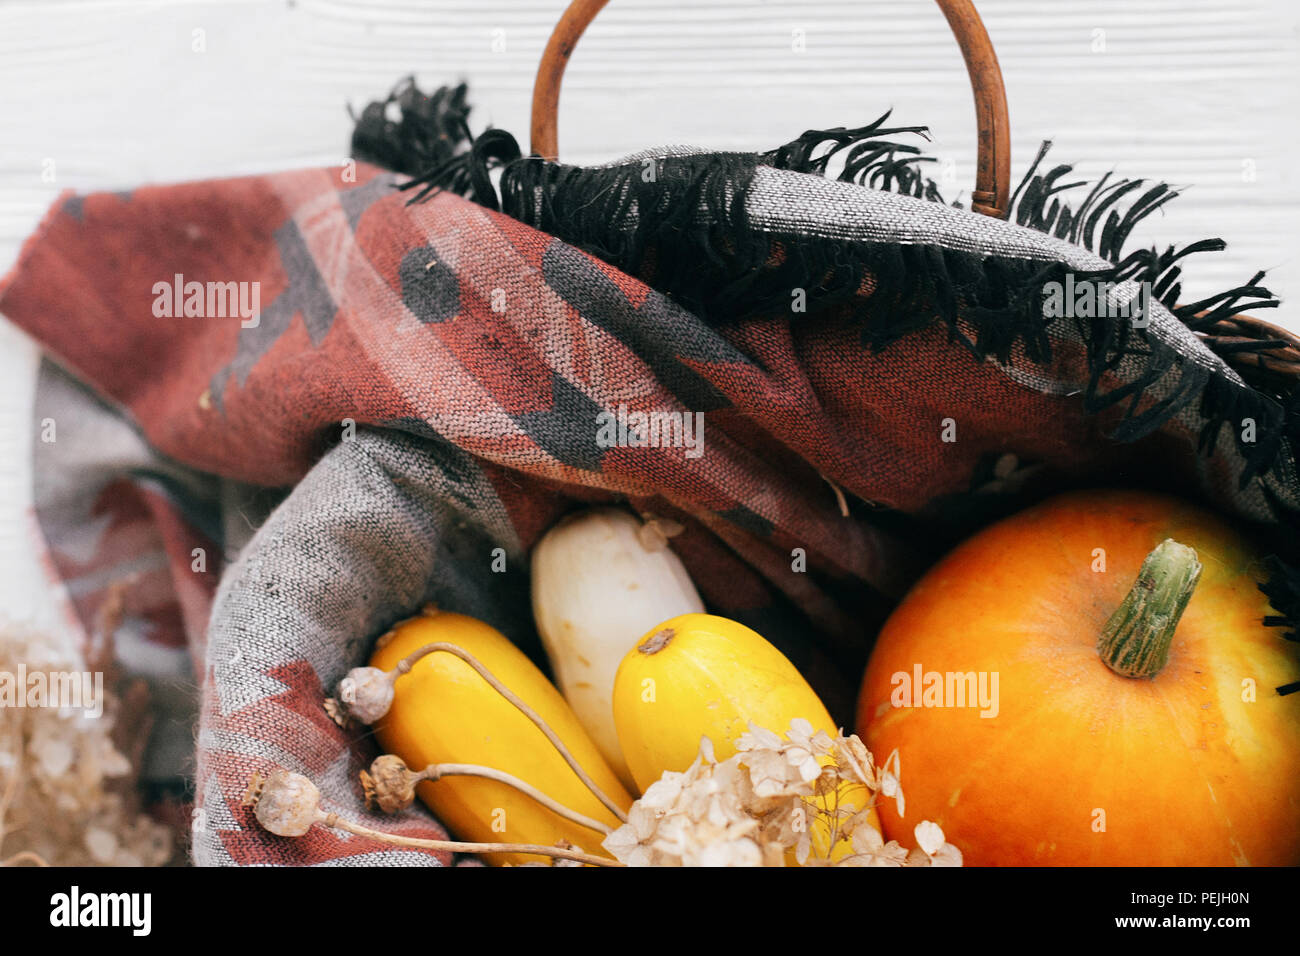 Kürbis und Zucchini in Weidenkorb auf weißem Holz- Hintergrund. Happy Thanksgiving und Halloween. Ernte und hallo Herbst Konzept. rustikale Bild Stockfoto